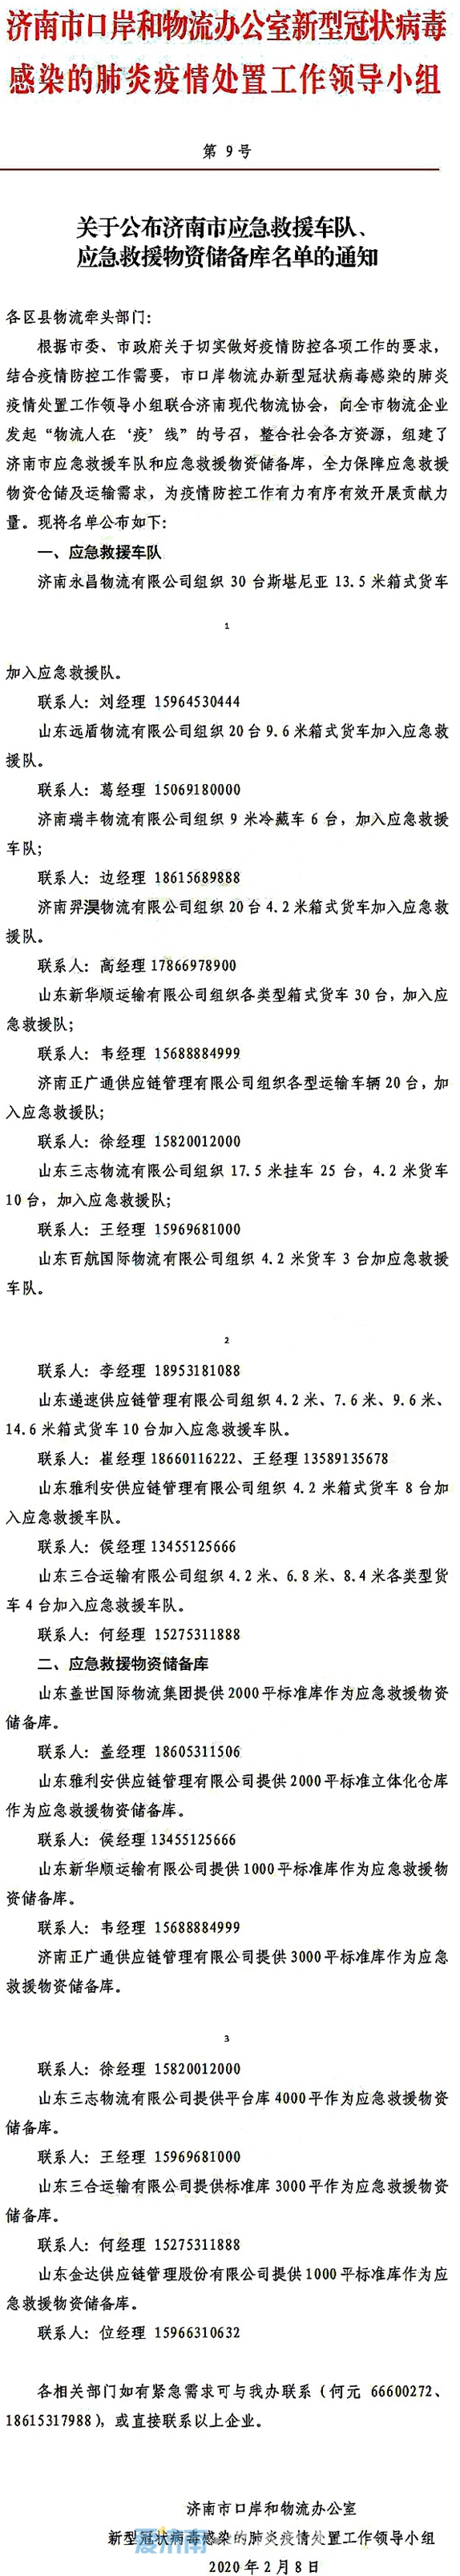 济南公布应急救援车队、应急救援物资储备库名单